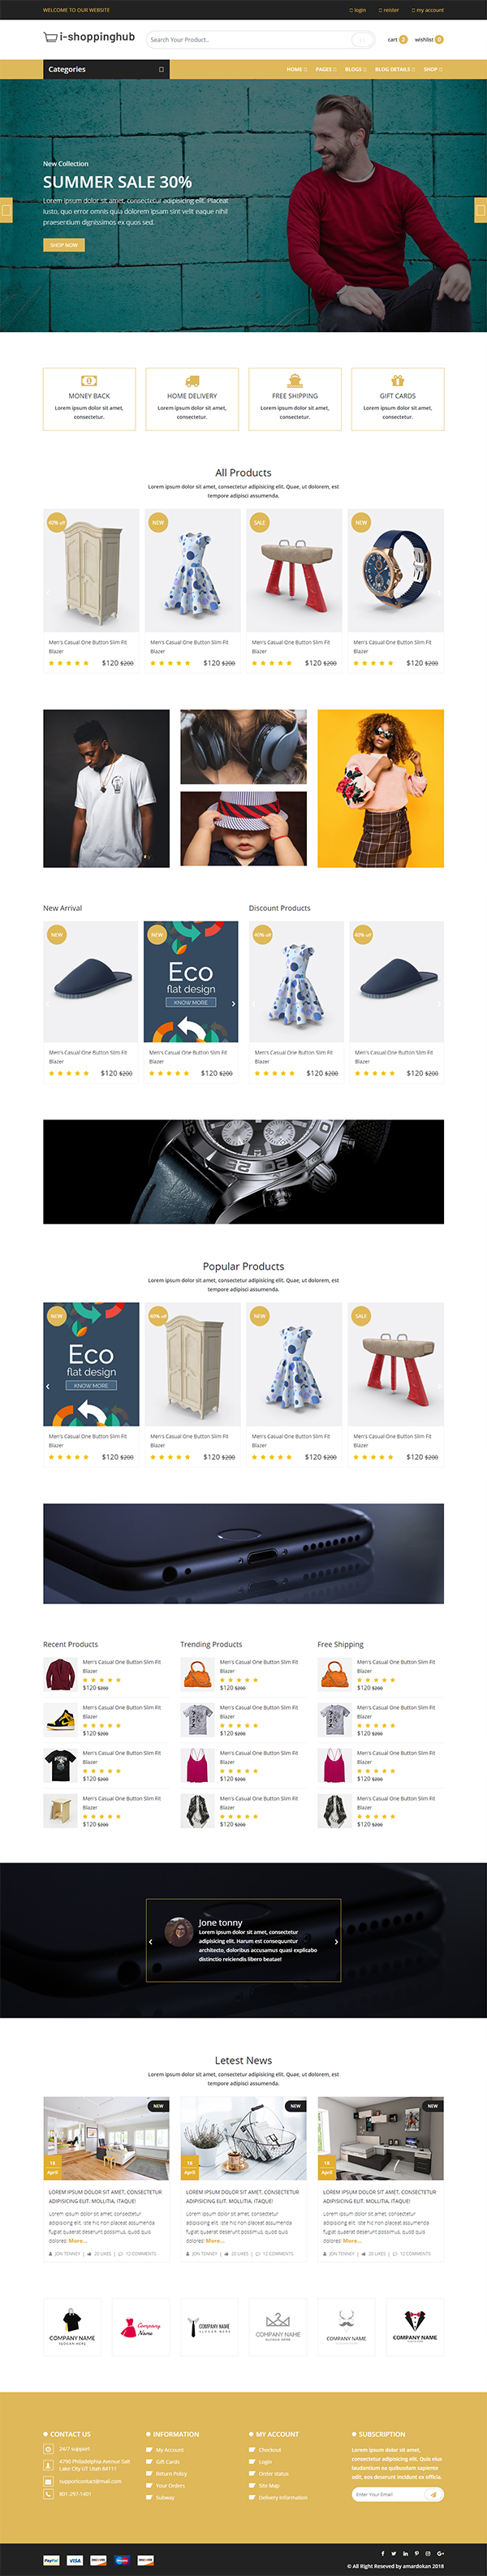 i-shoppinghub Multipurpose E-commerce Responsive HTML5 Template